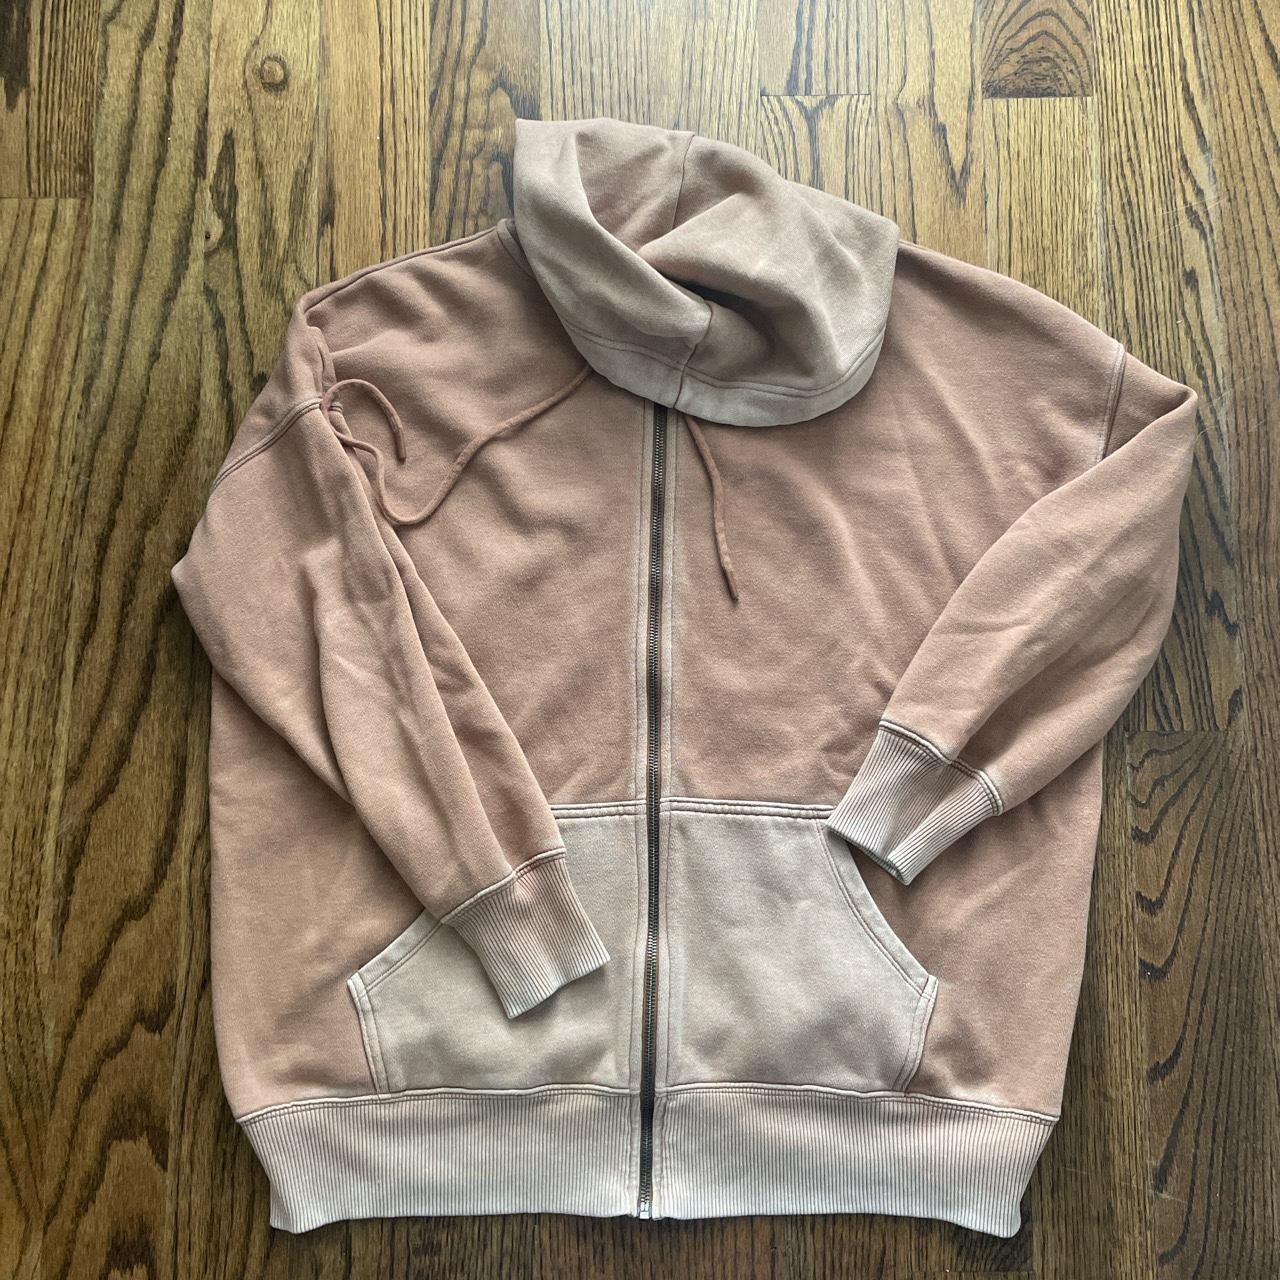 Aerie oversized zip-up hoodie in a pink/brown color.... - Depop